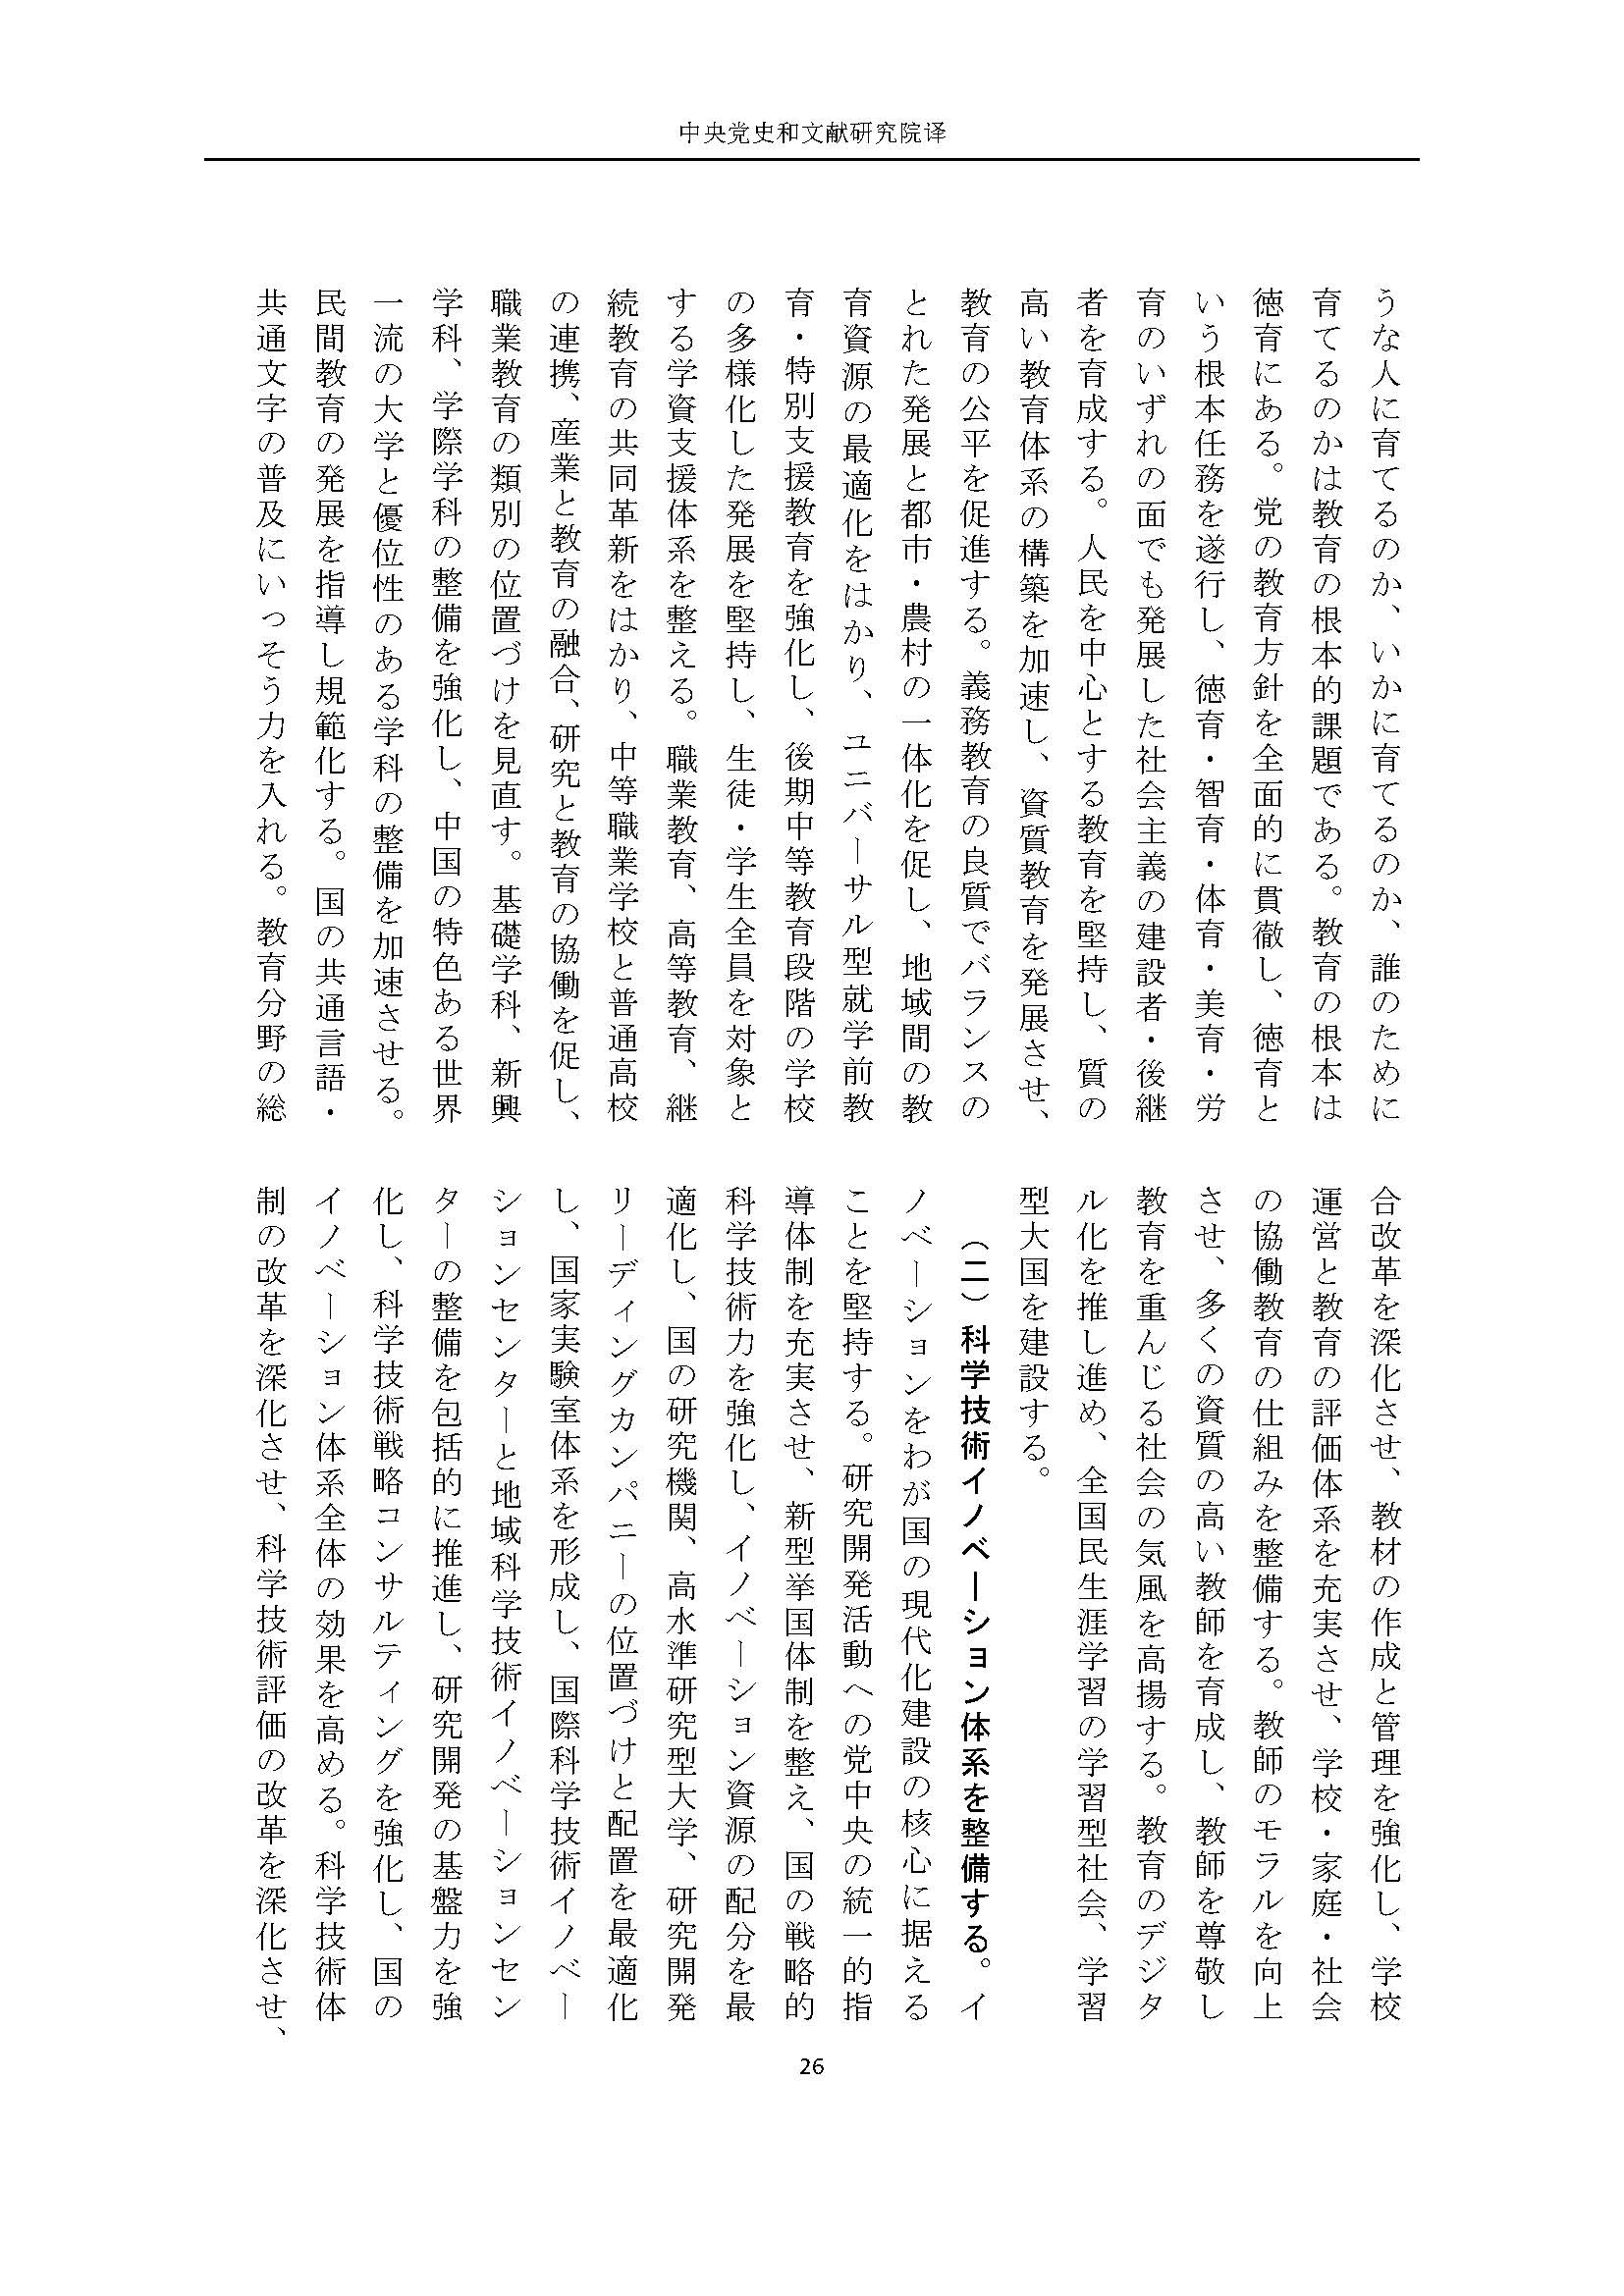 二十大报告（日文全文）_页面_27